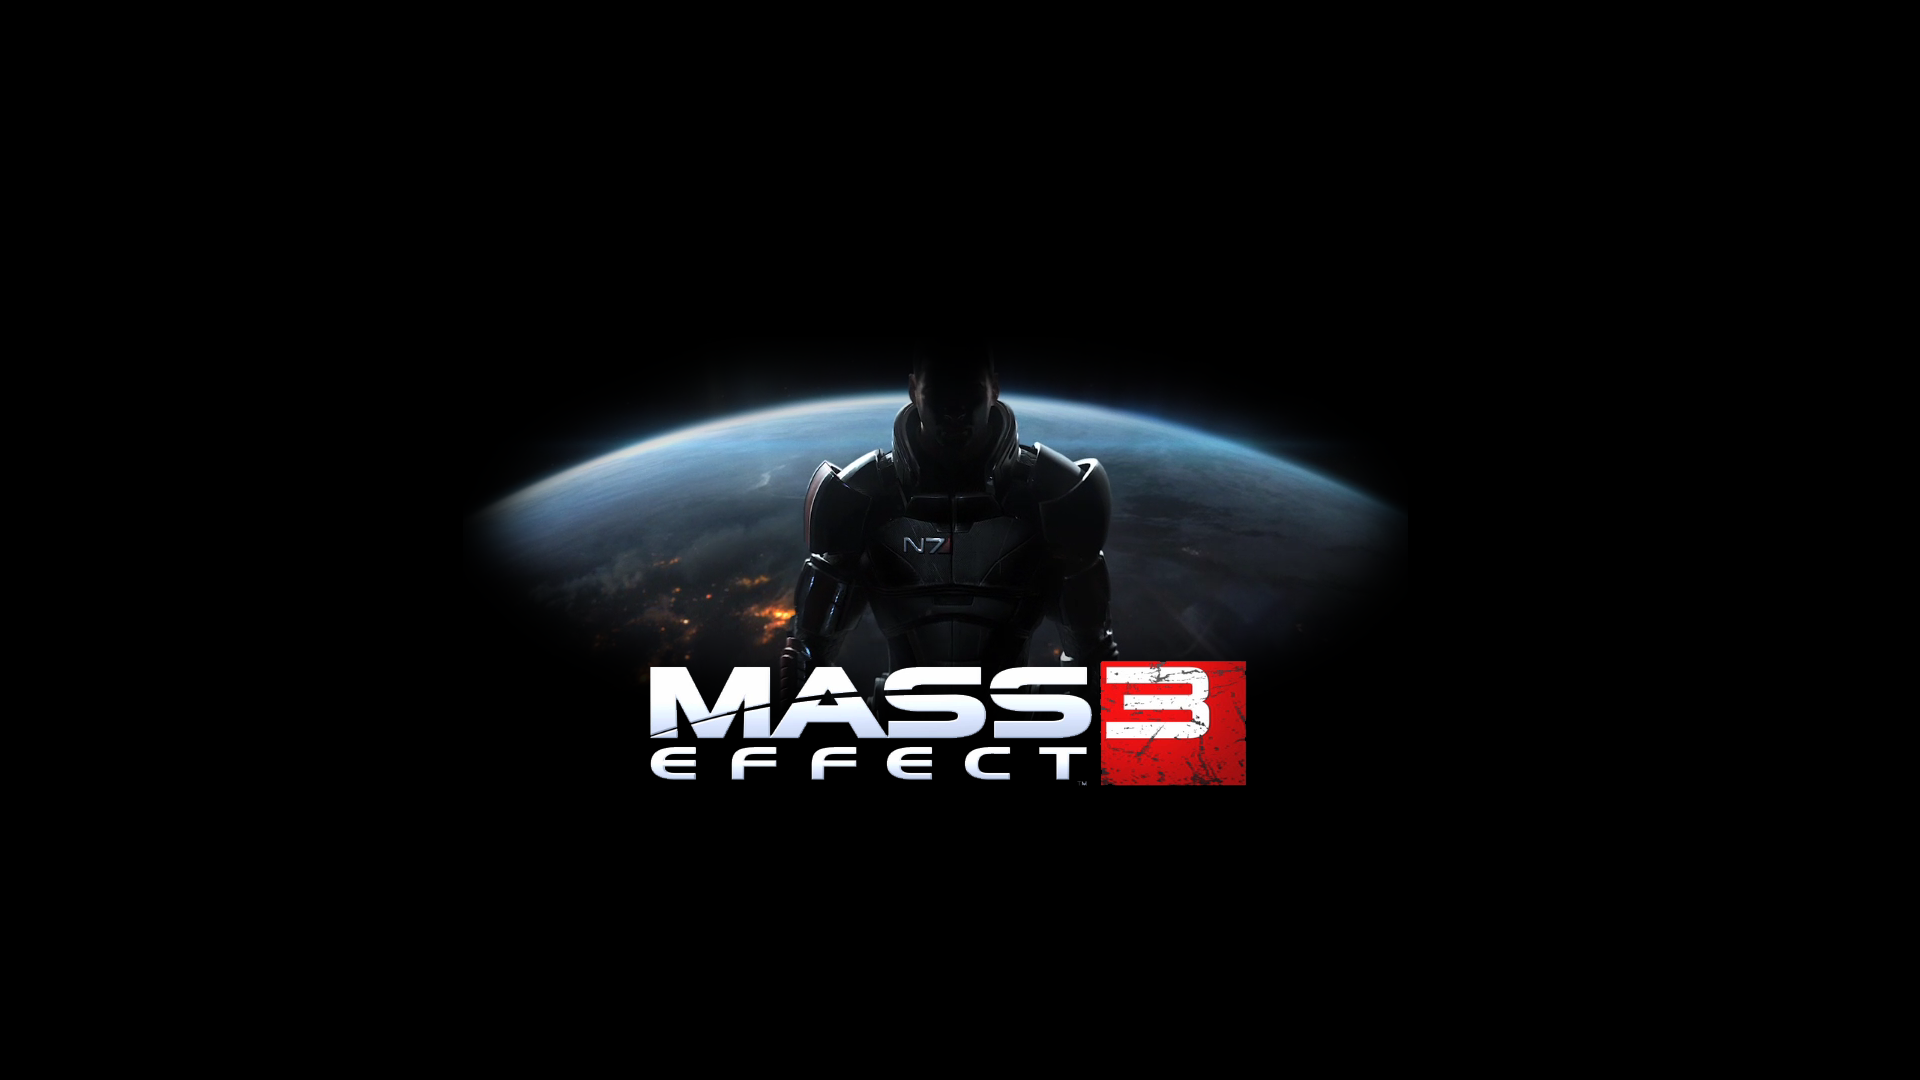 Mass-Effect-3-Wallpaper-2014-Games-HD.png